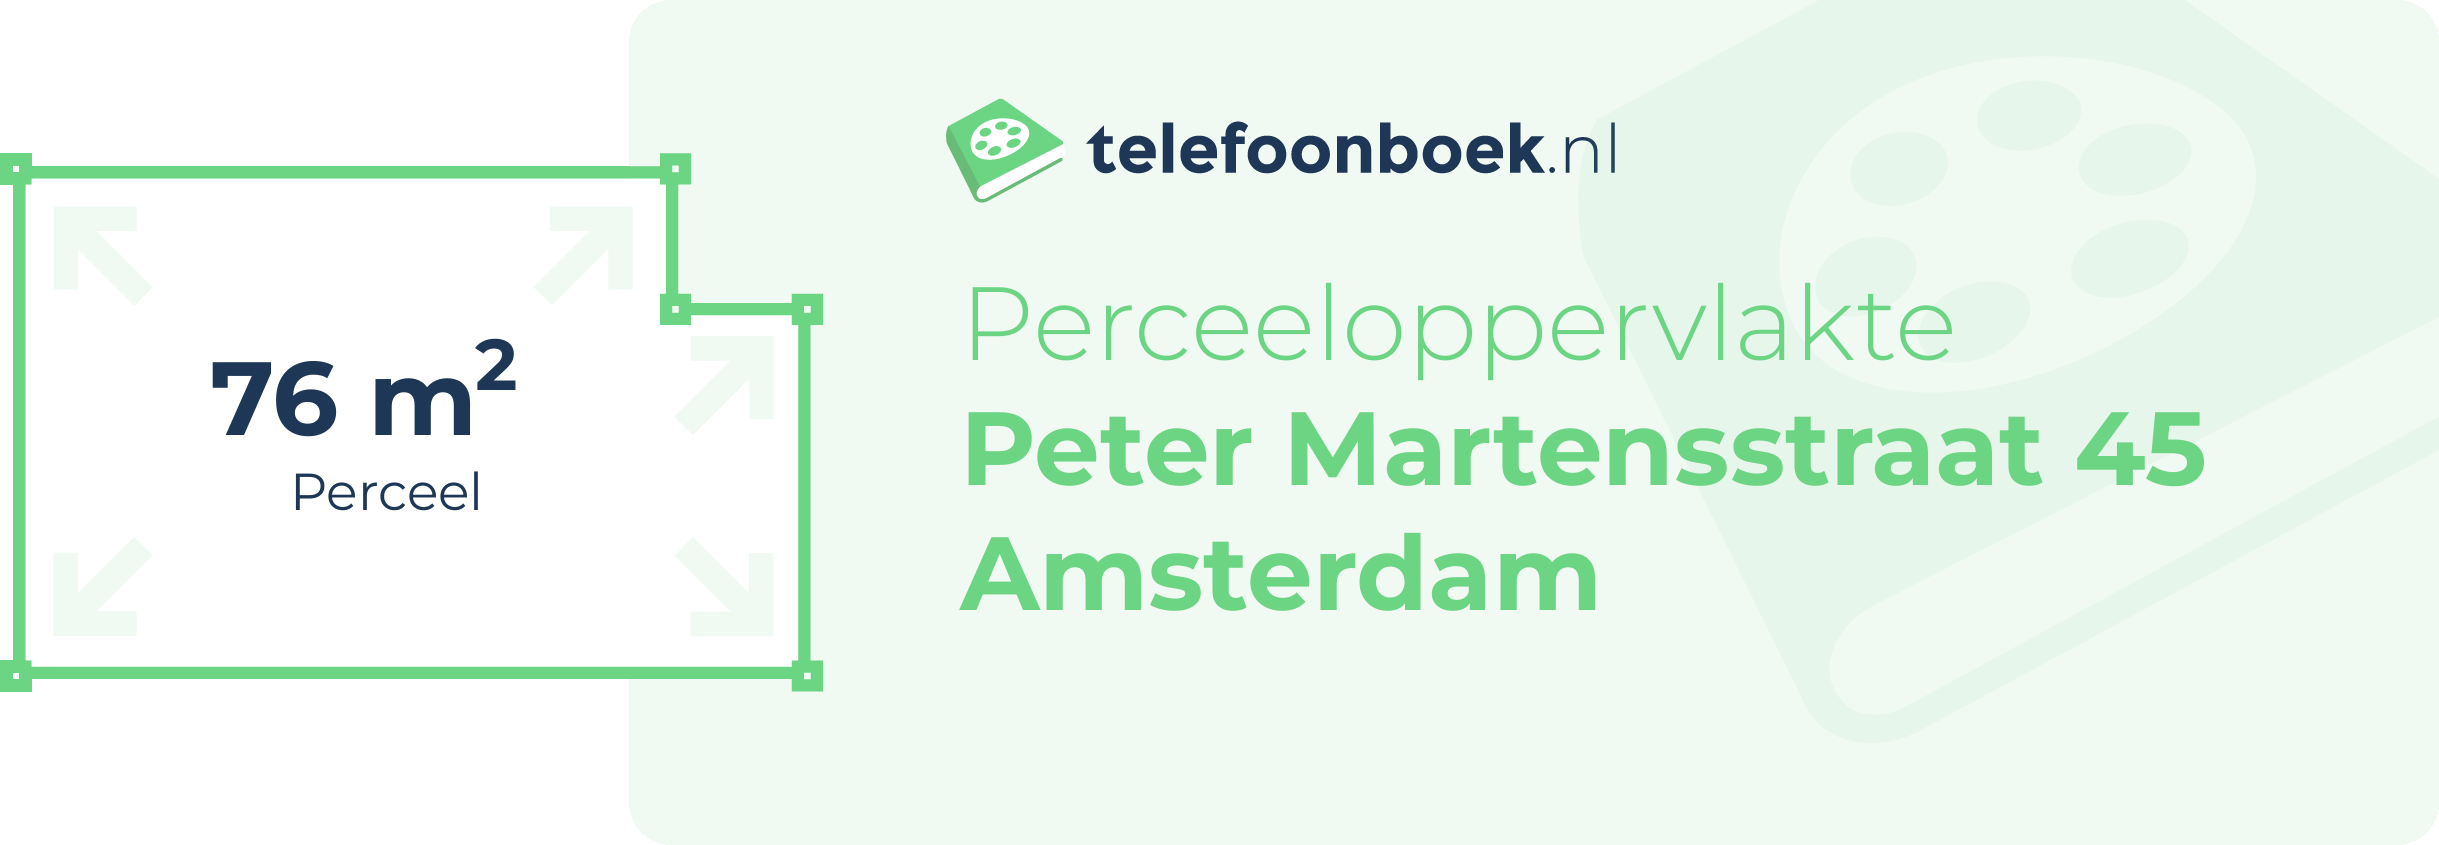 Perceeloppervlakte Peter Martensstraat 45 Amsterdam